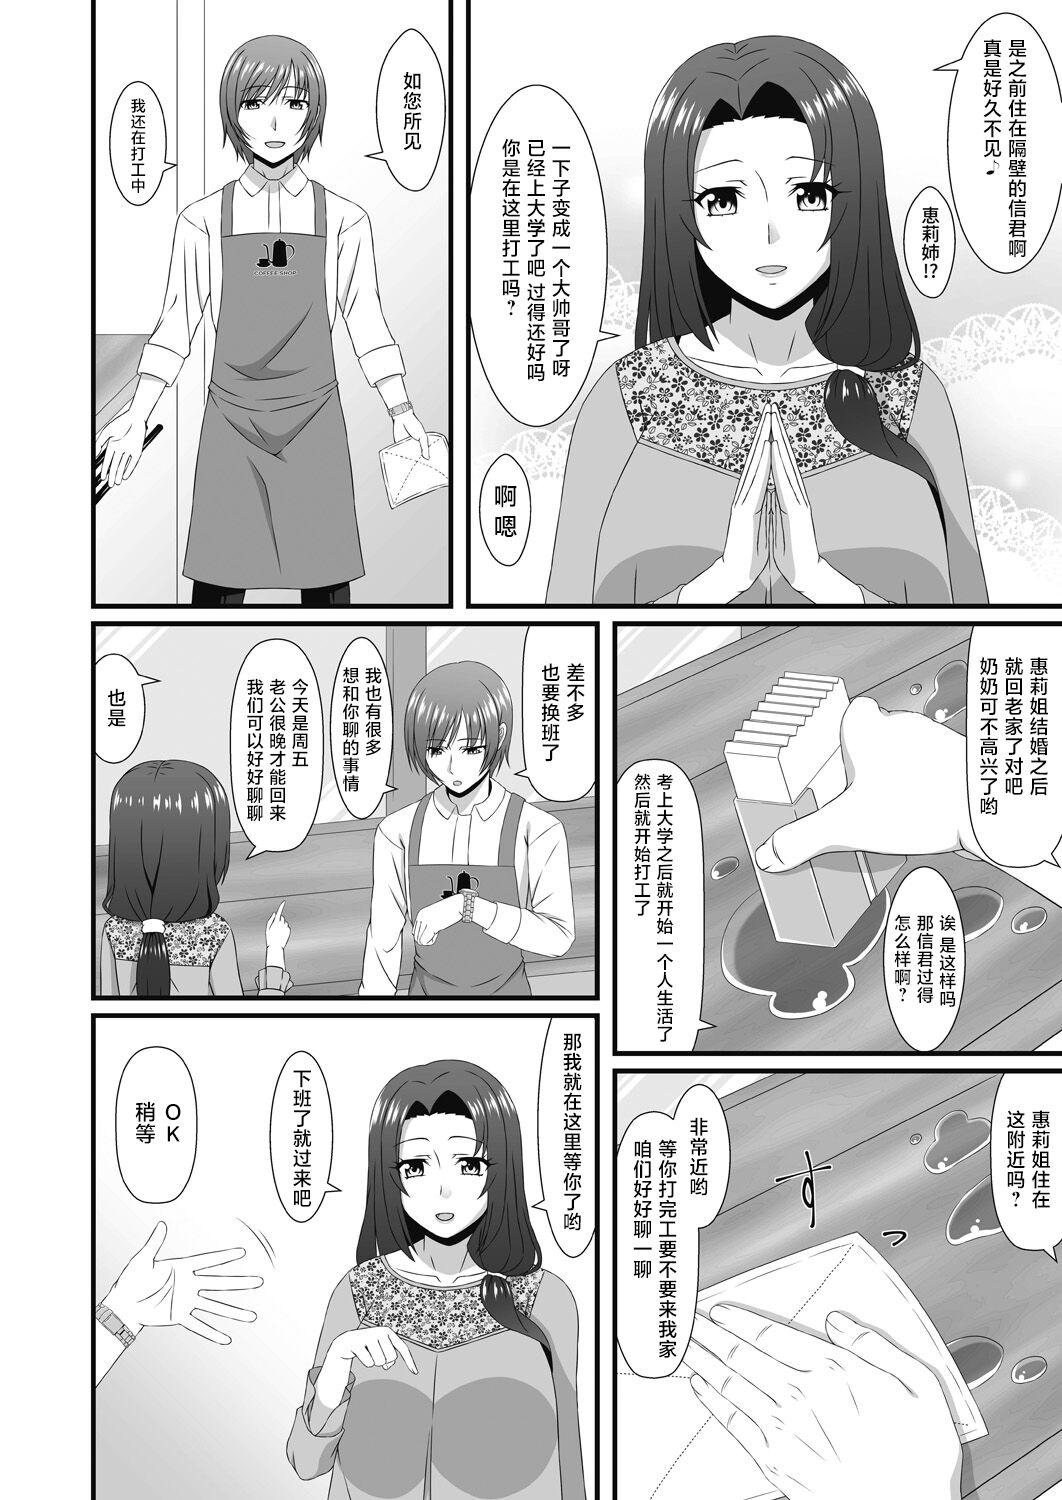 Emo Mukashi Asonte Aketa Ko ga Ikemen ni Natteita node... - Original De Quatro - Page 2